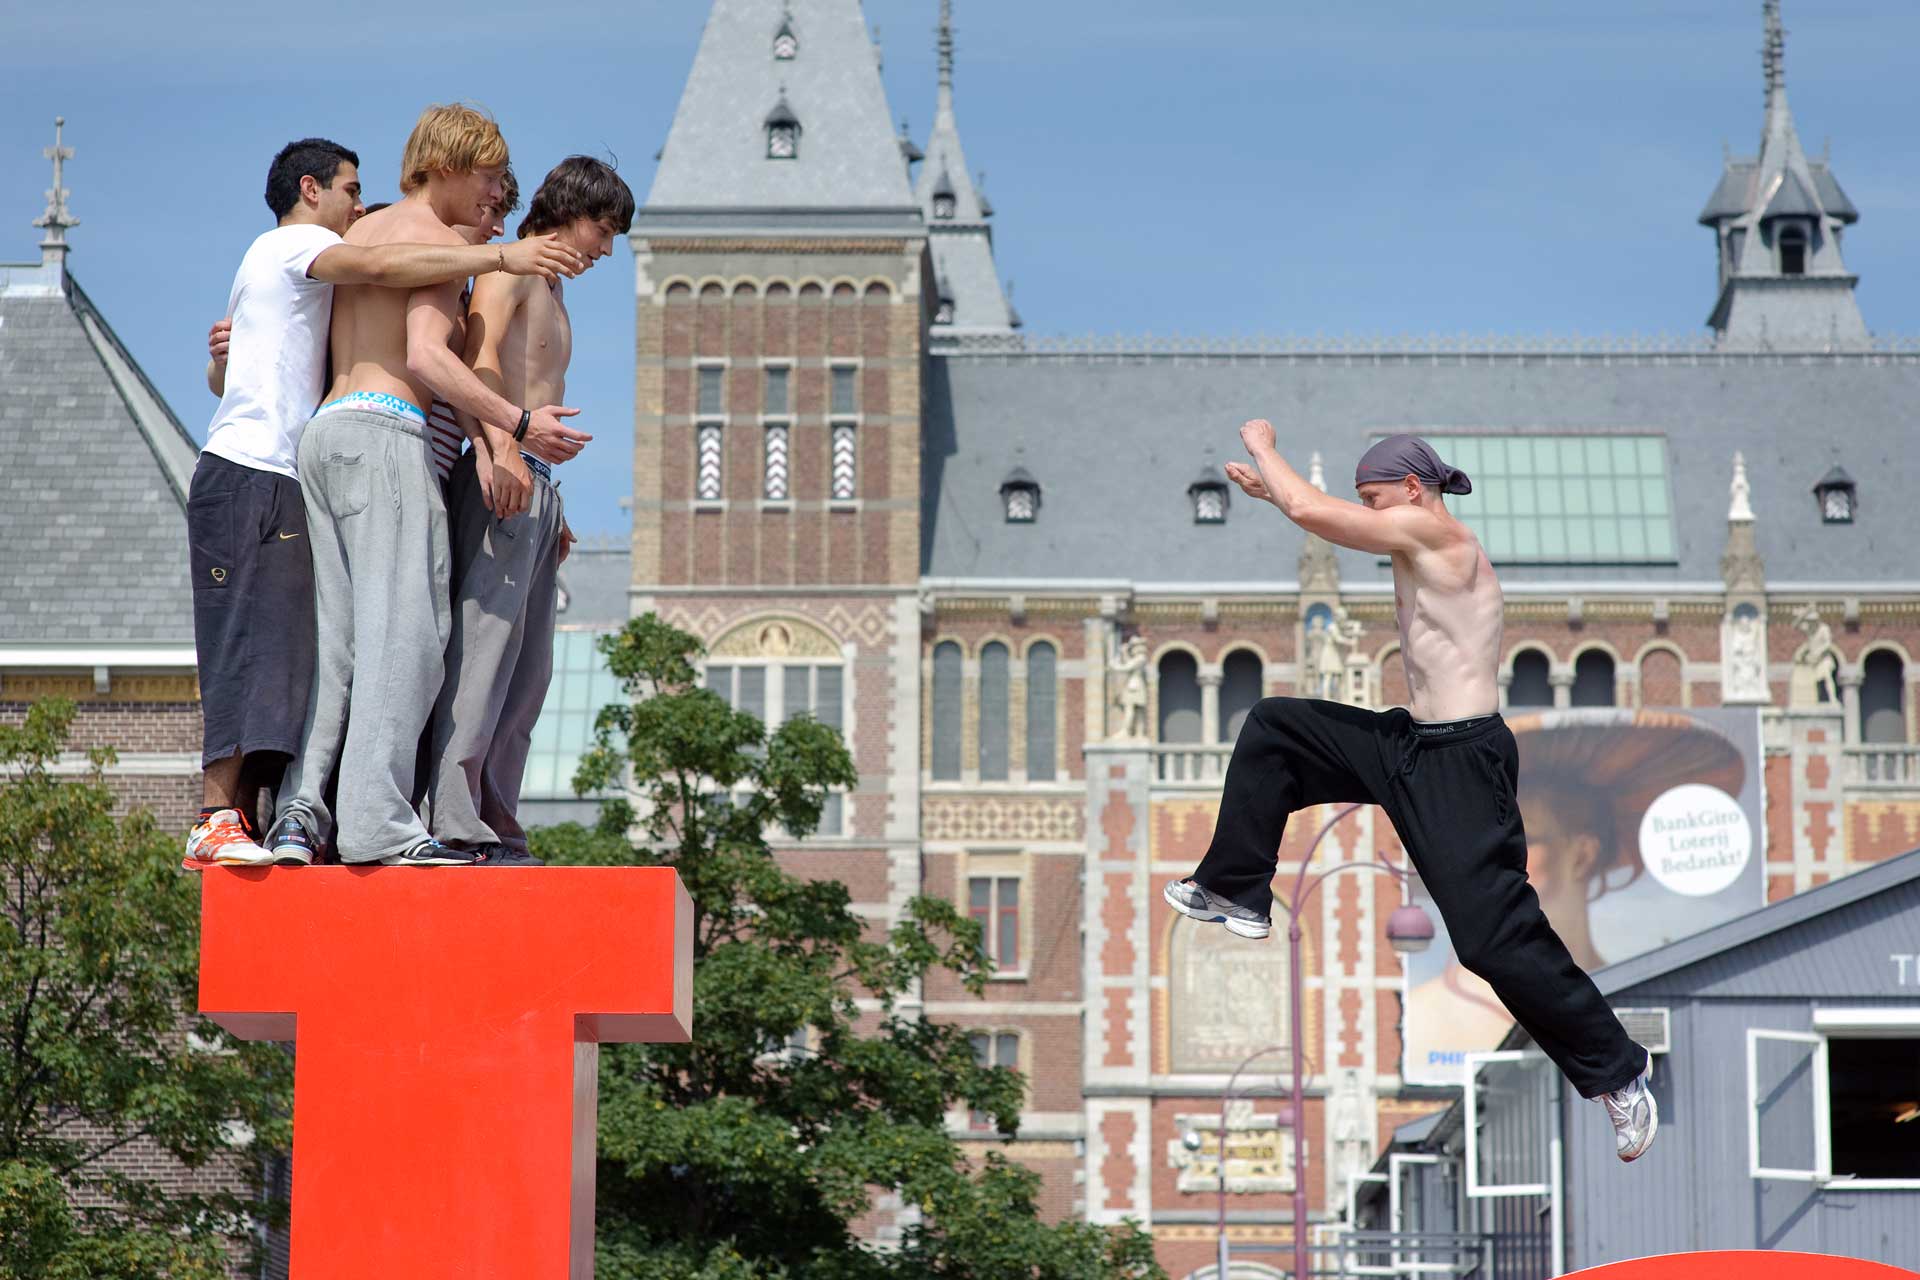 Amsterdam Museumplein -Waardecreatie in de sport van morgen - Johan Cruyff Academy